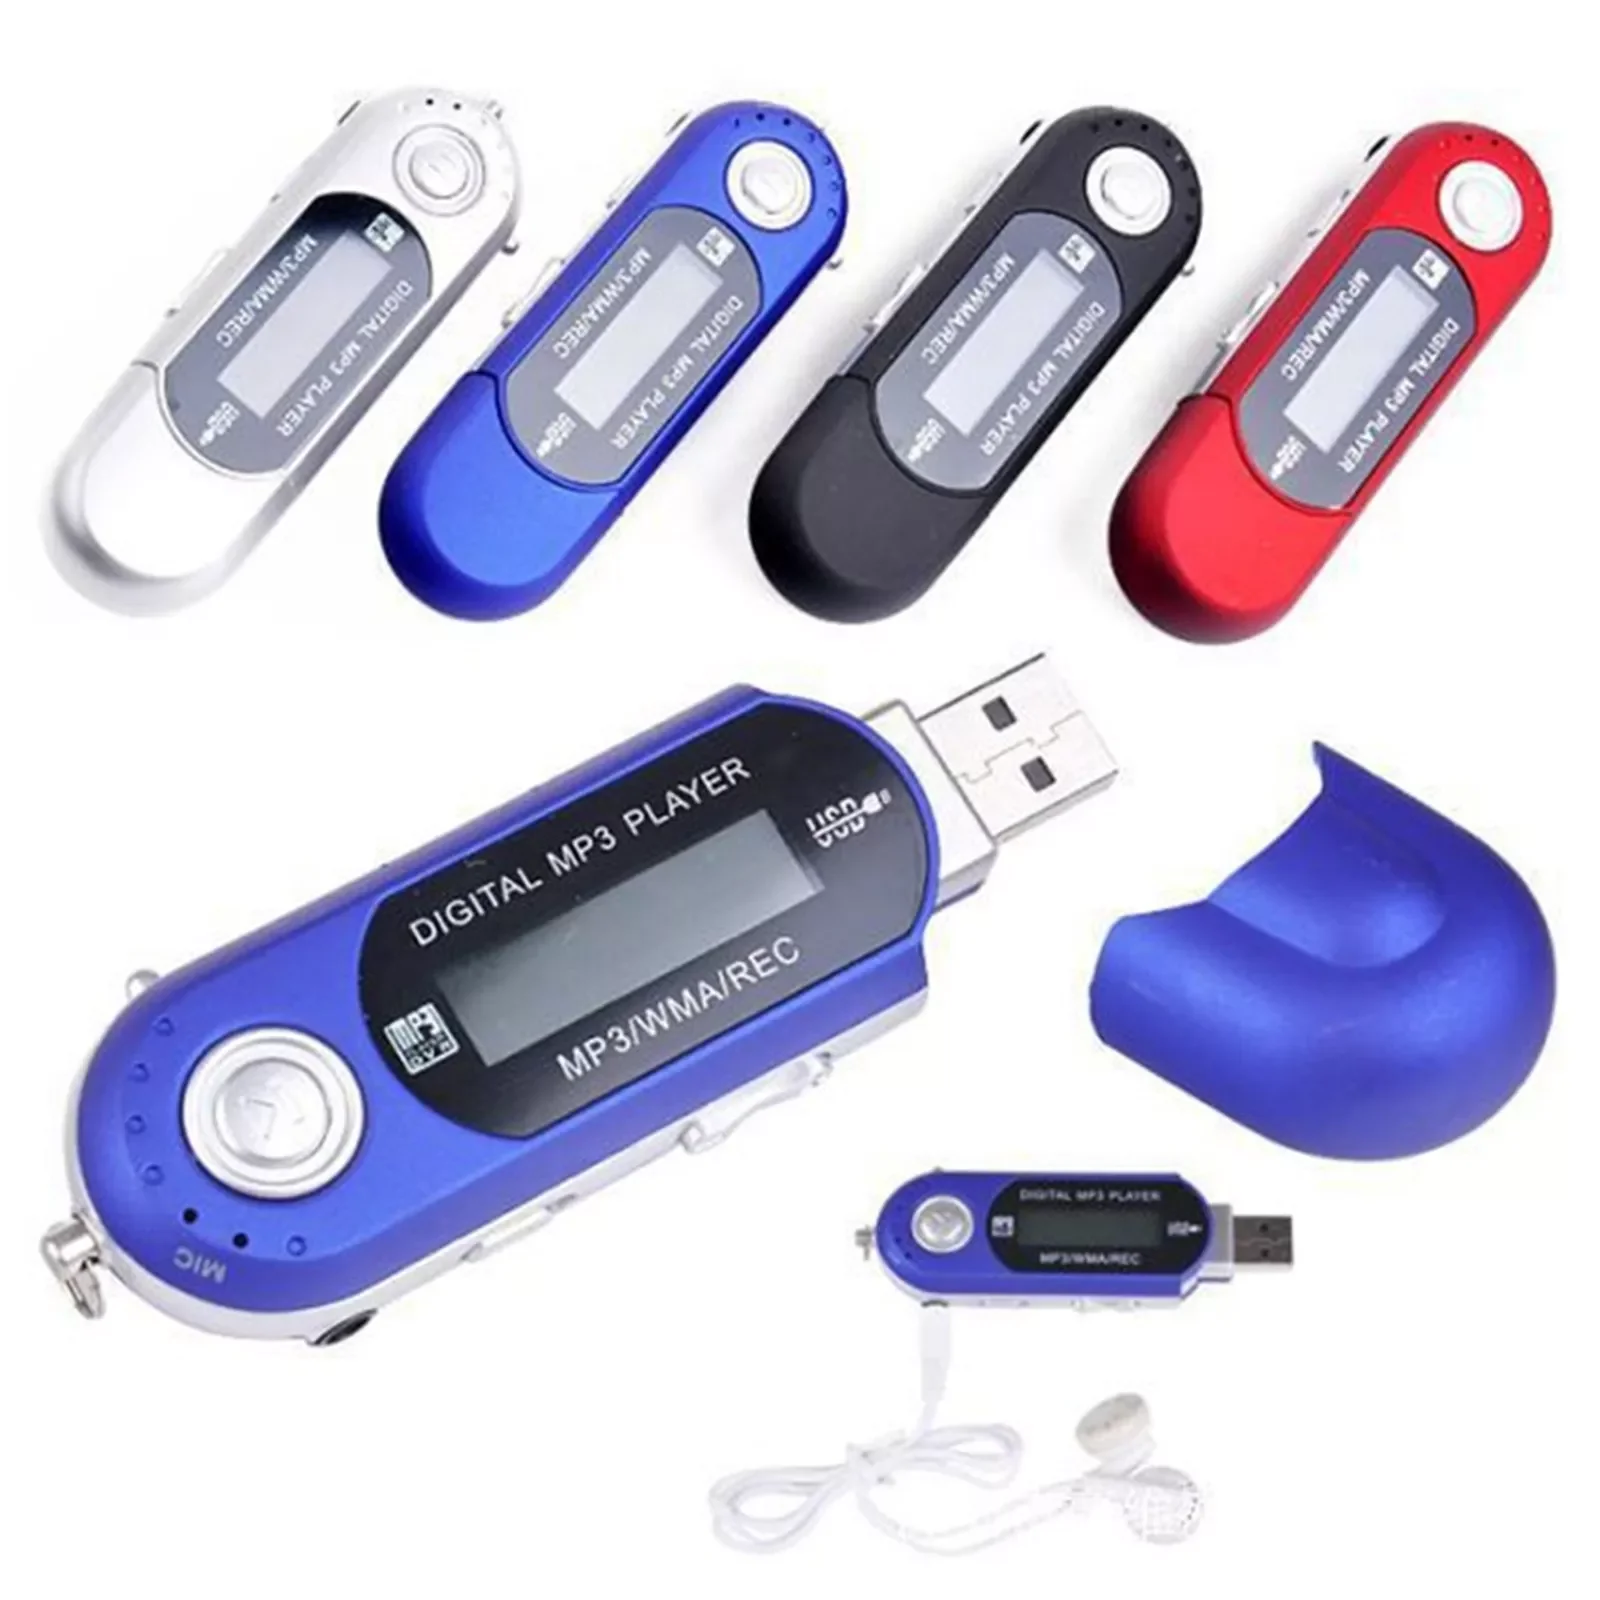 

USB MP3 плеер 4 ГБ 8 ГБ мини MP3 музыкальный плеер цифровой ЖК-экран Поддержка MP3 FM радио модный спортивный плеер портативный mp3 плееры